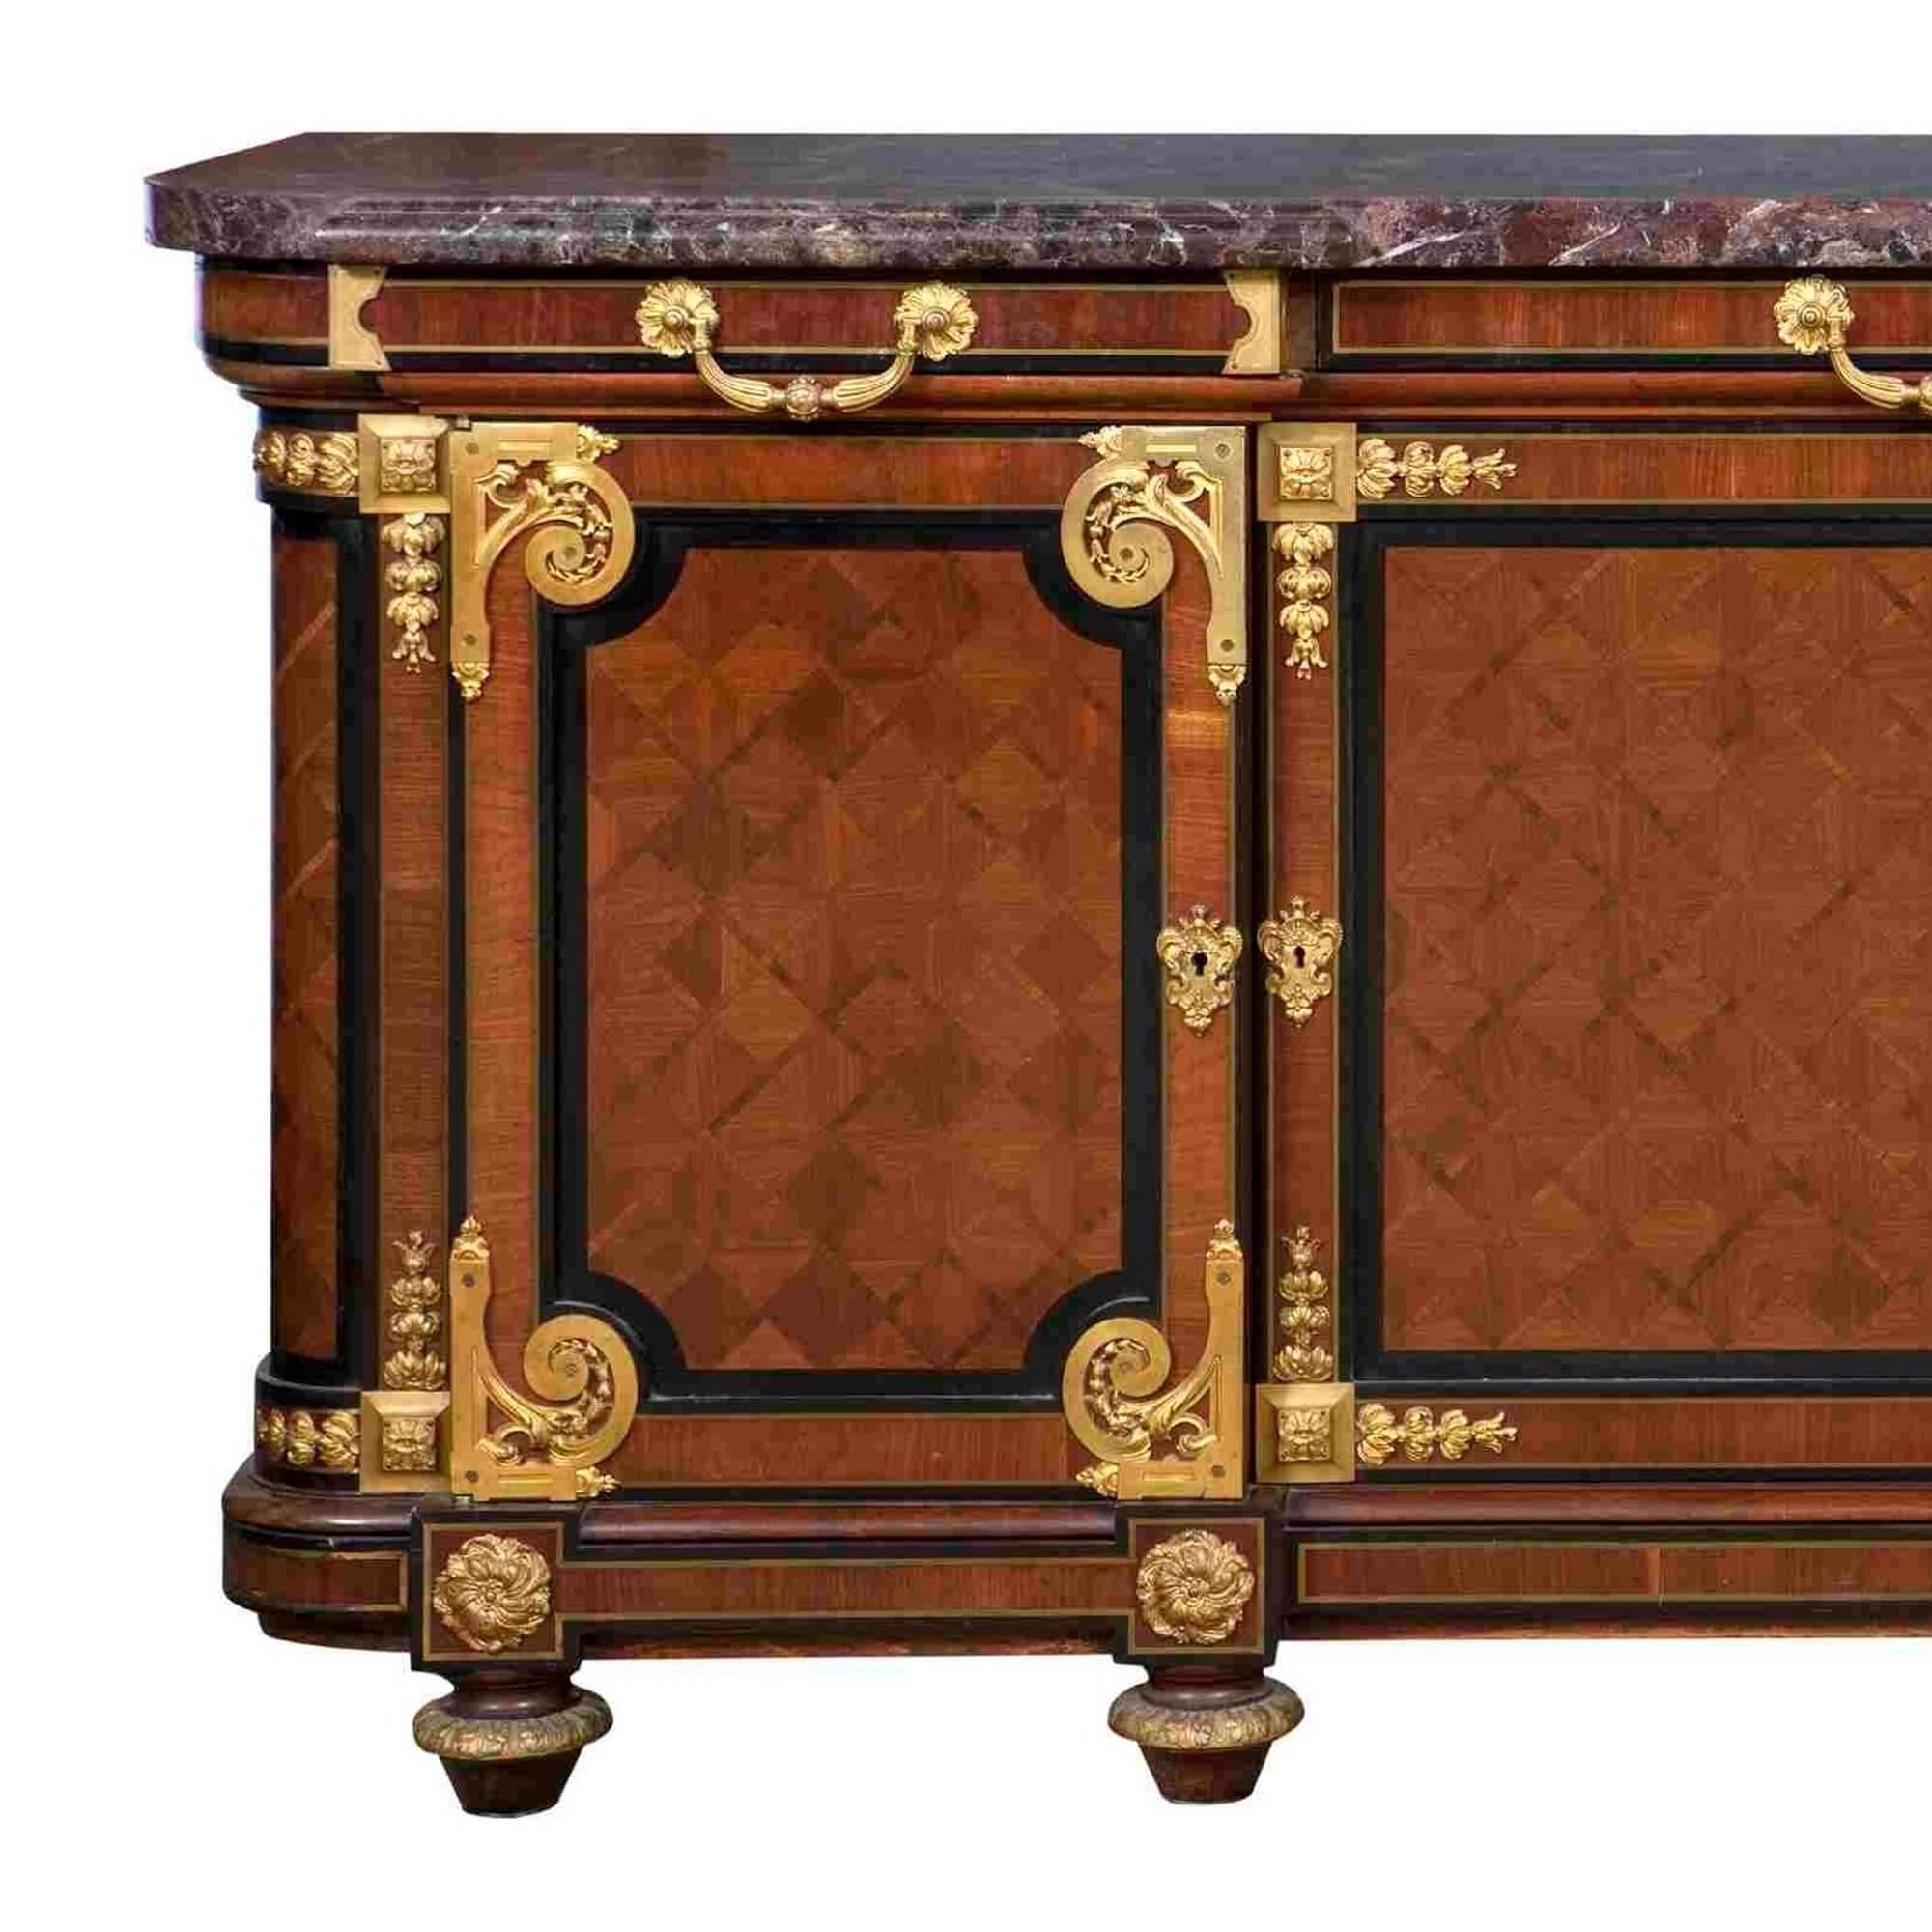 Cabinet ancien de style Louis XVI en acajou, bronze doré et marbre par Mercier Frères,
Français, 19e siècle
Hauteur 98cm, largeur 223cm, profondeur 55cm

Reposant sur des pieds toupies, ce meuble est fabriqué en acajou et est richement décoré de